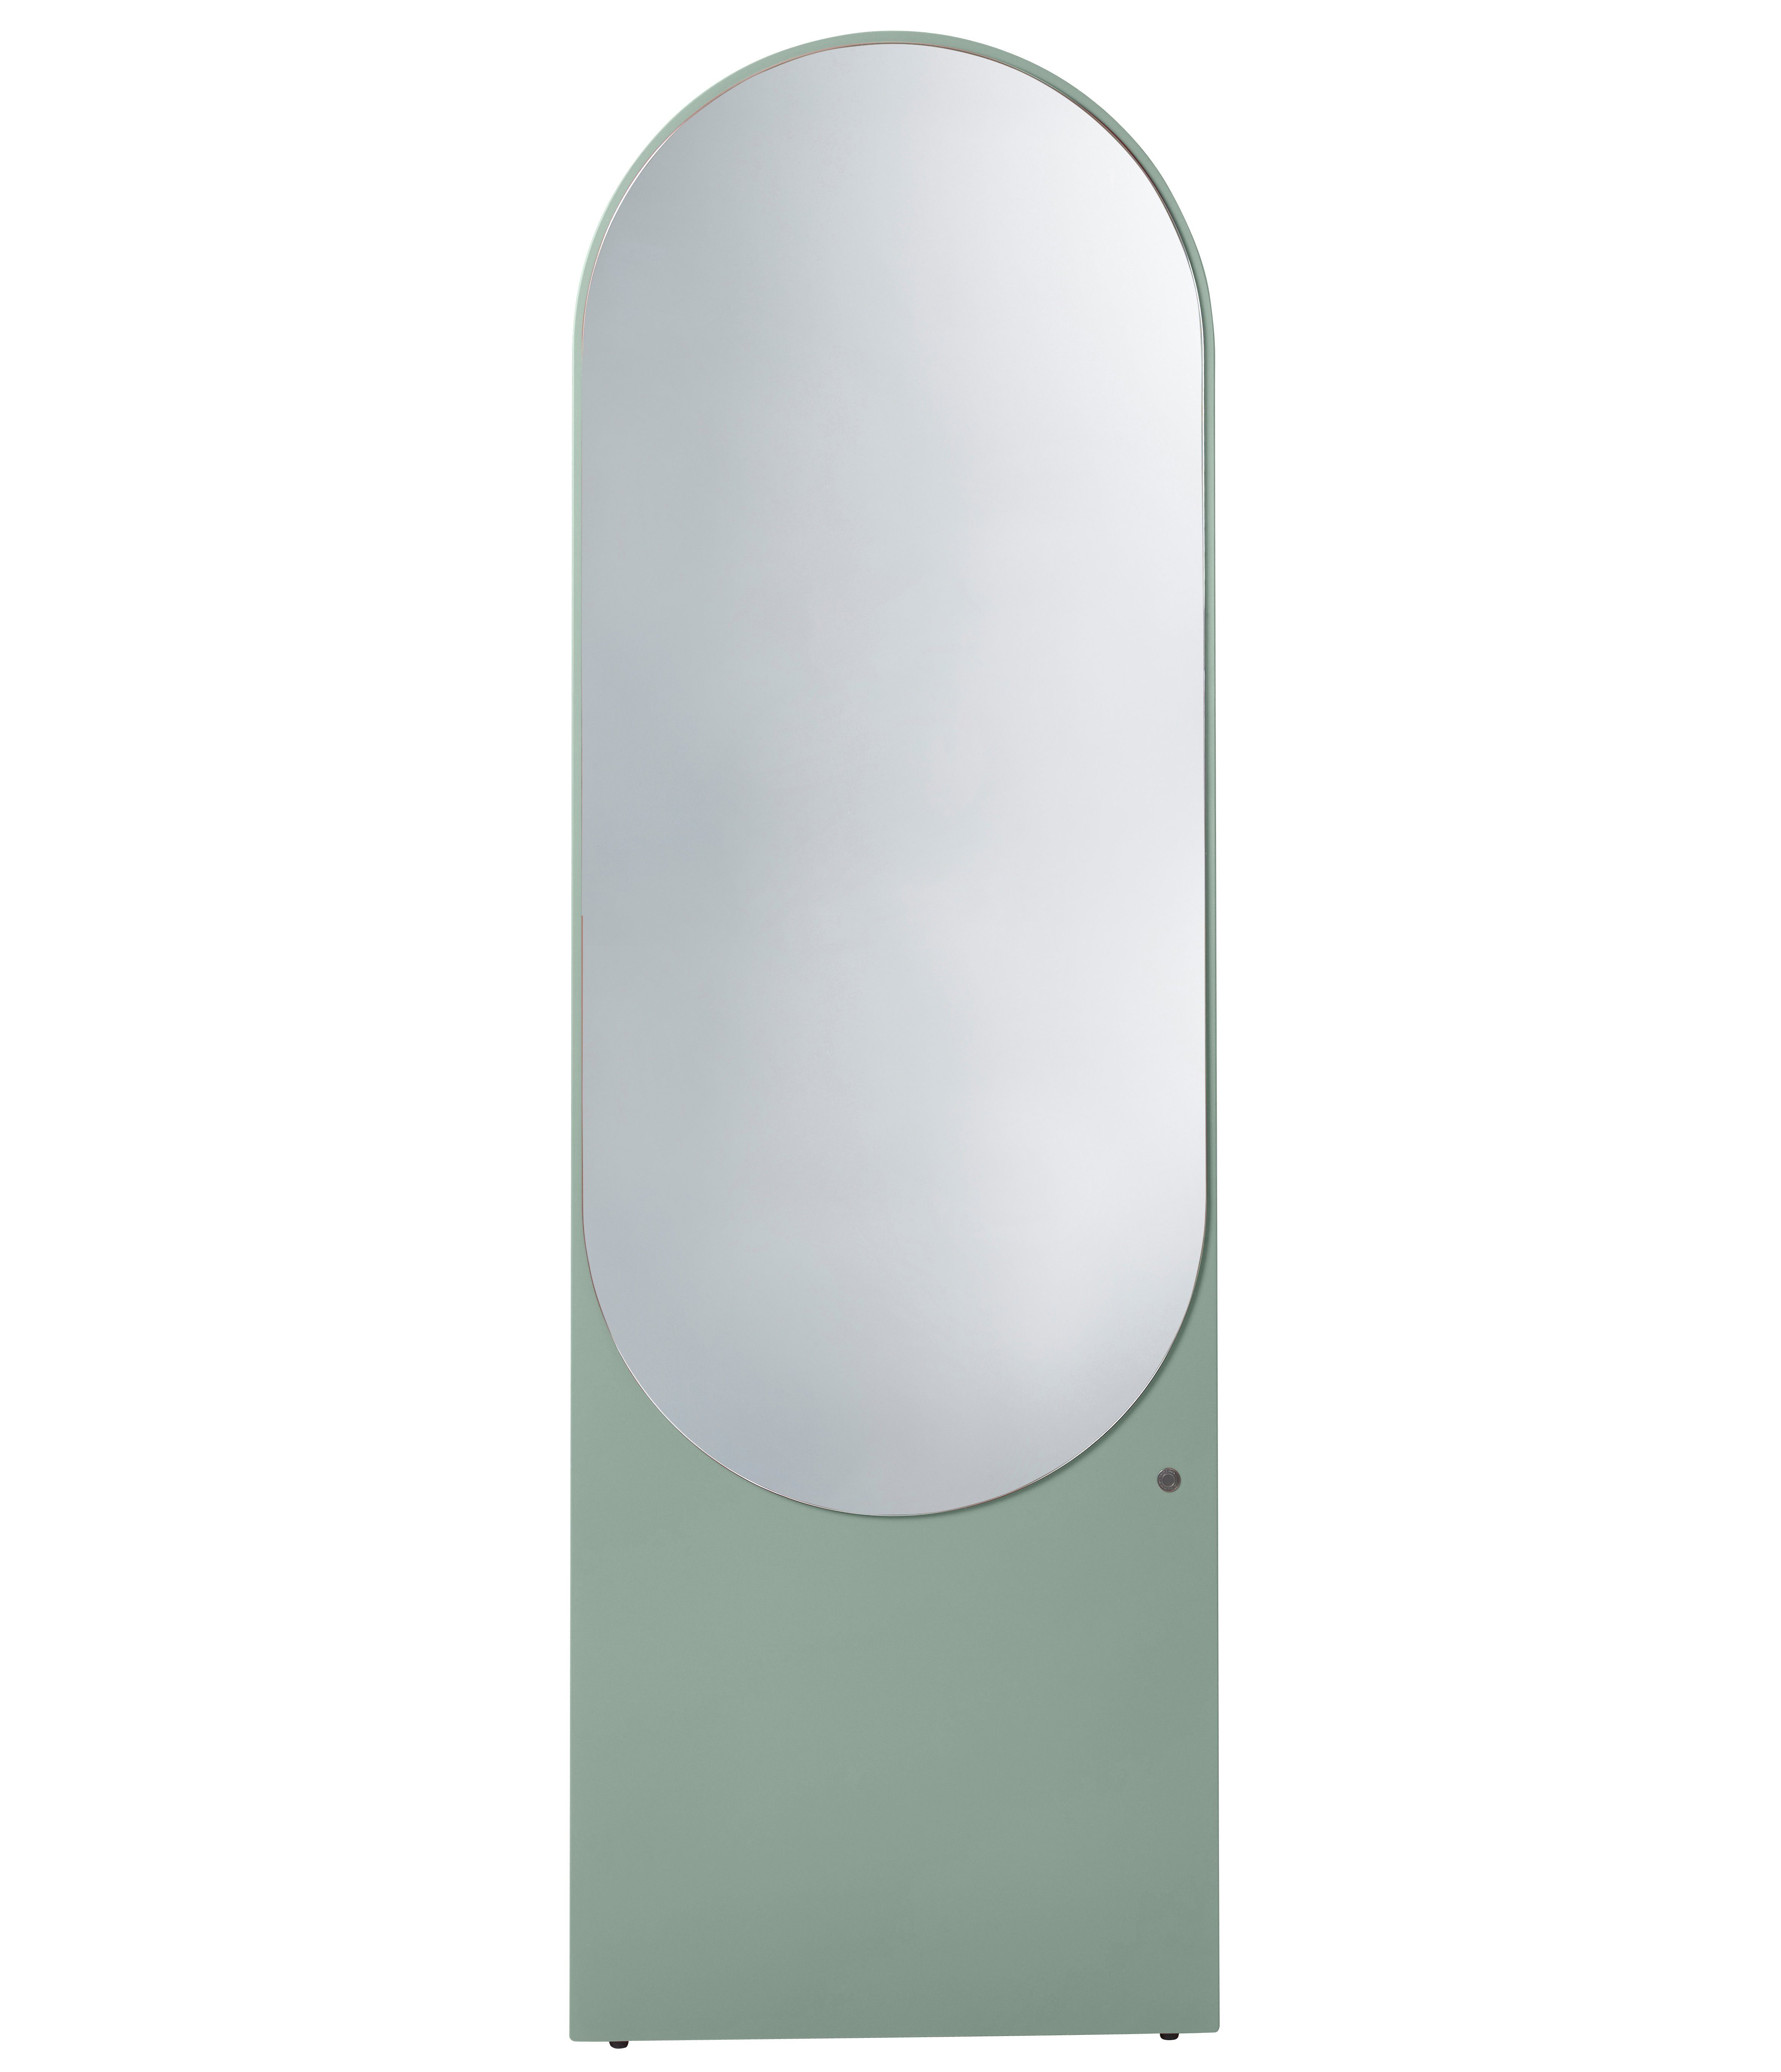 COLOR Highlight Wandlehnender in - in MIRROR Farben eucalyptus_055 TOM hochwertig Spiegel Standspiegel lackiert, schönen farbiges Form - TAILOR besonderer & vielen HOME